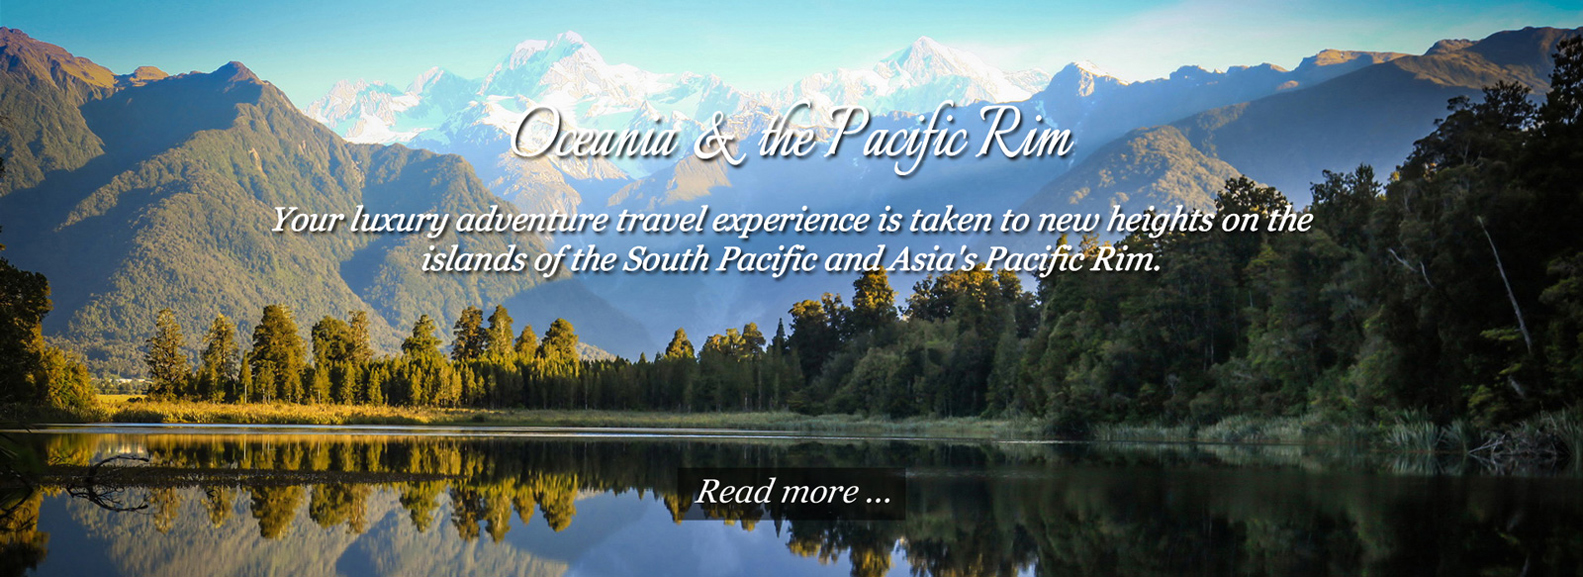 Oceania & The Pacific Rim